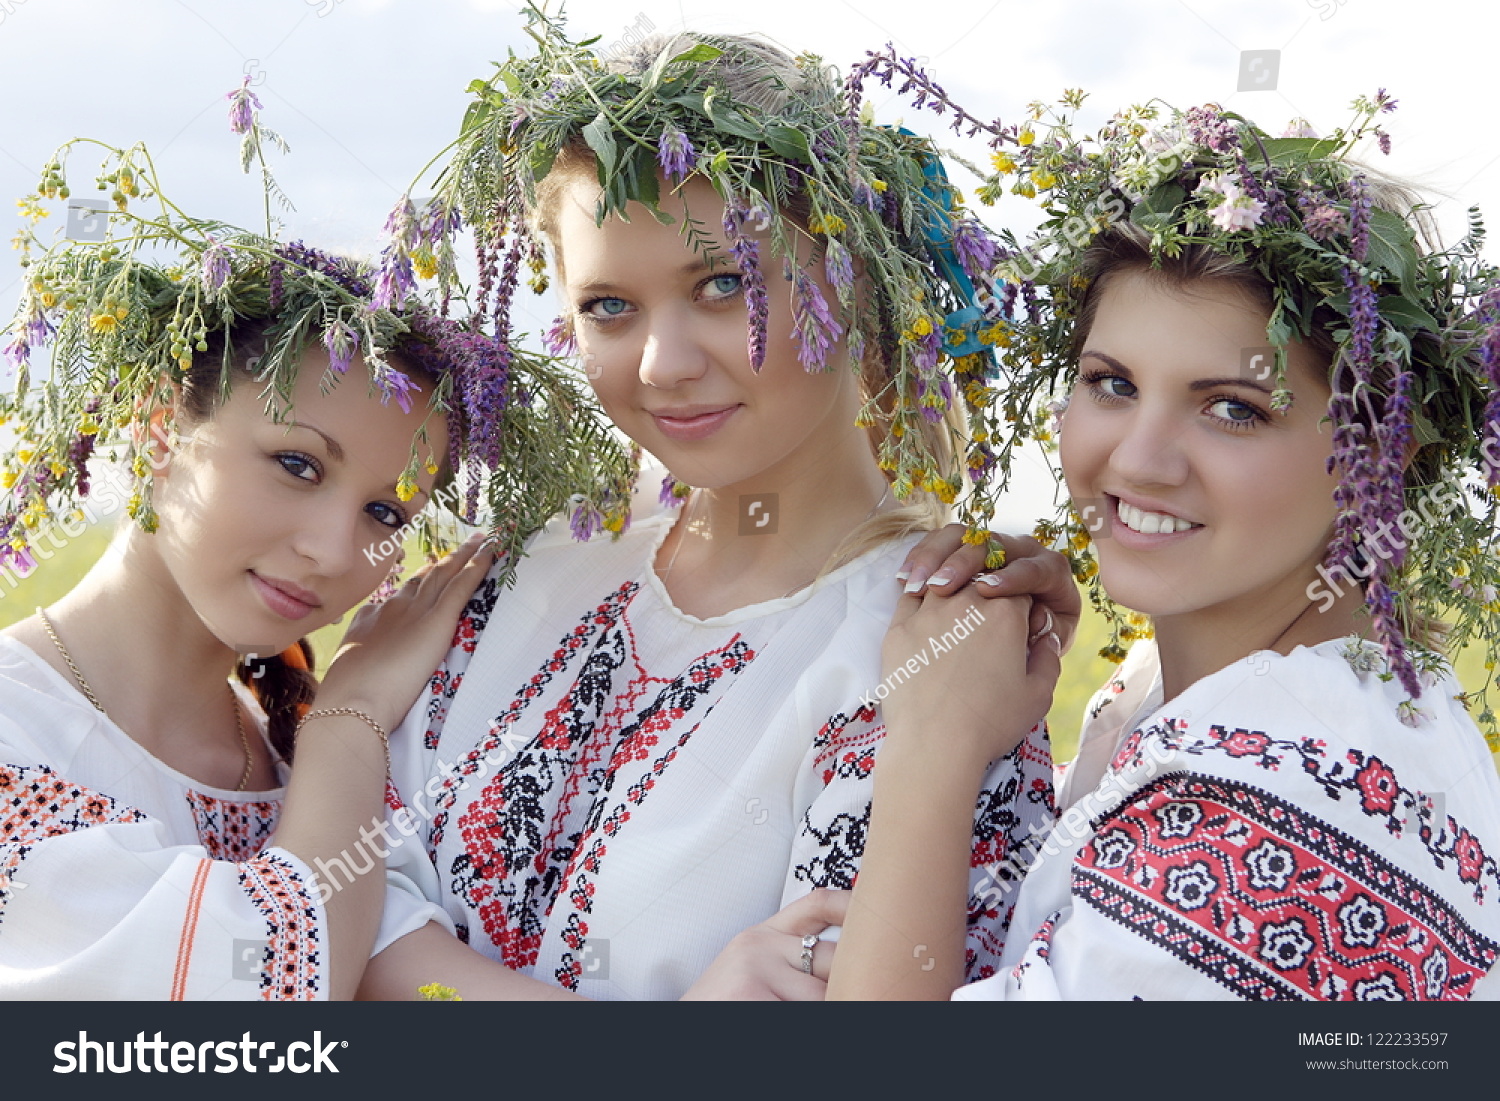 Among Ukraine Women 54